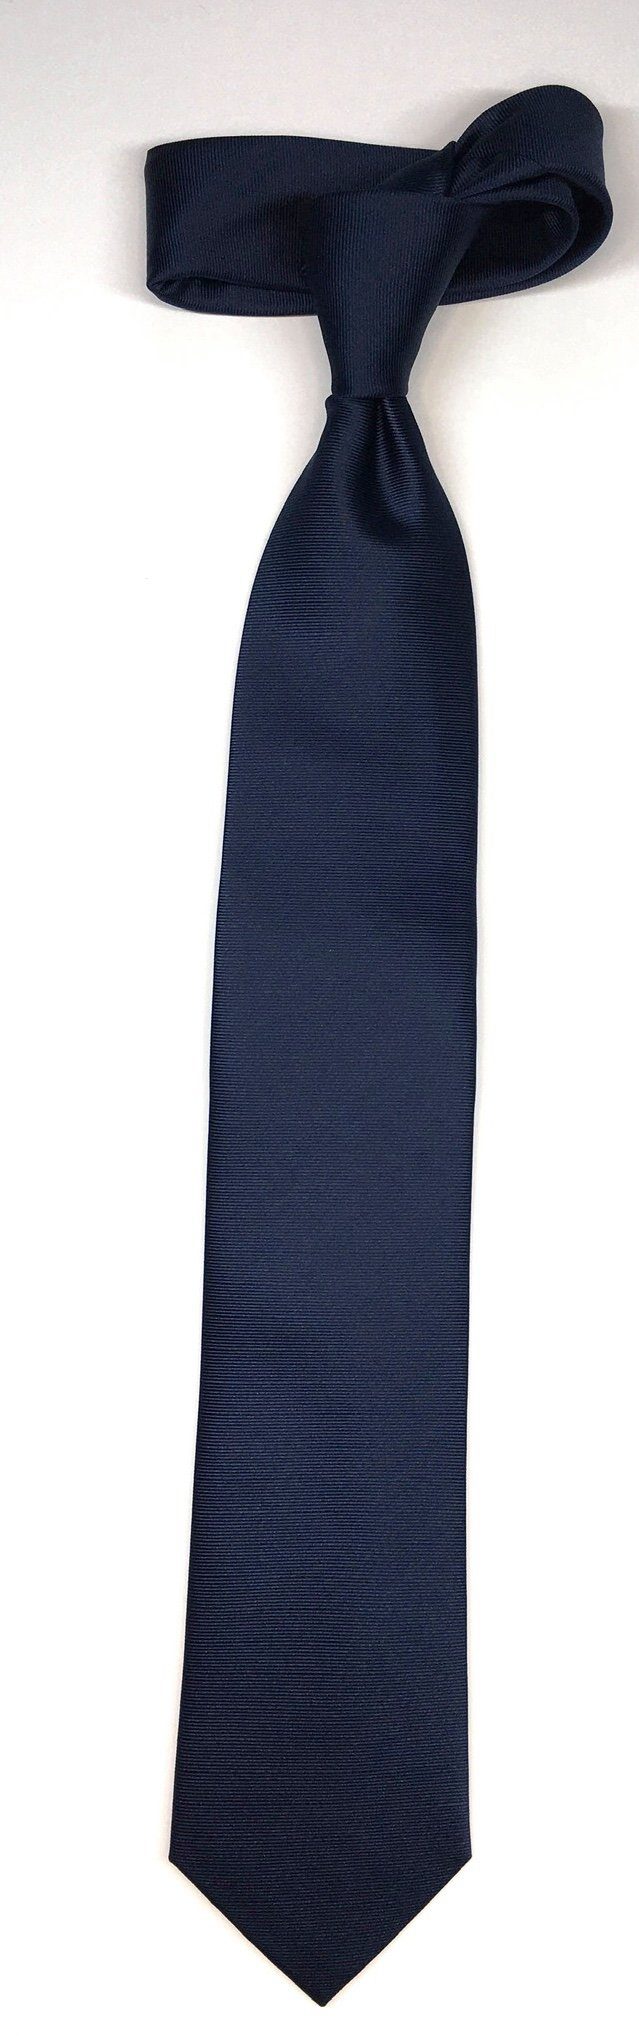 Uni 7cm im Krawatte edlen Krawatte Design Seidenfalter Seidenfalter Seidenfalter Marine Uni Krawatte